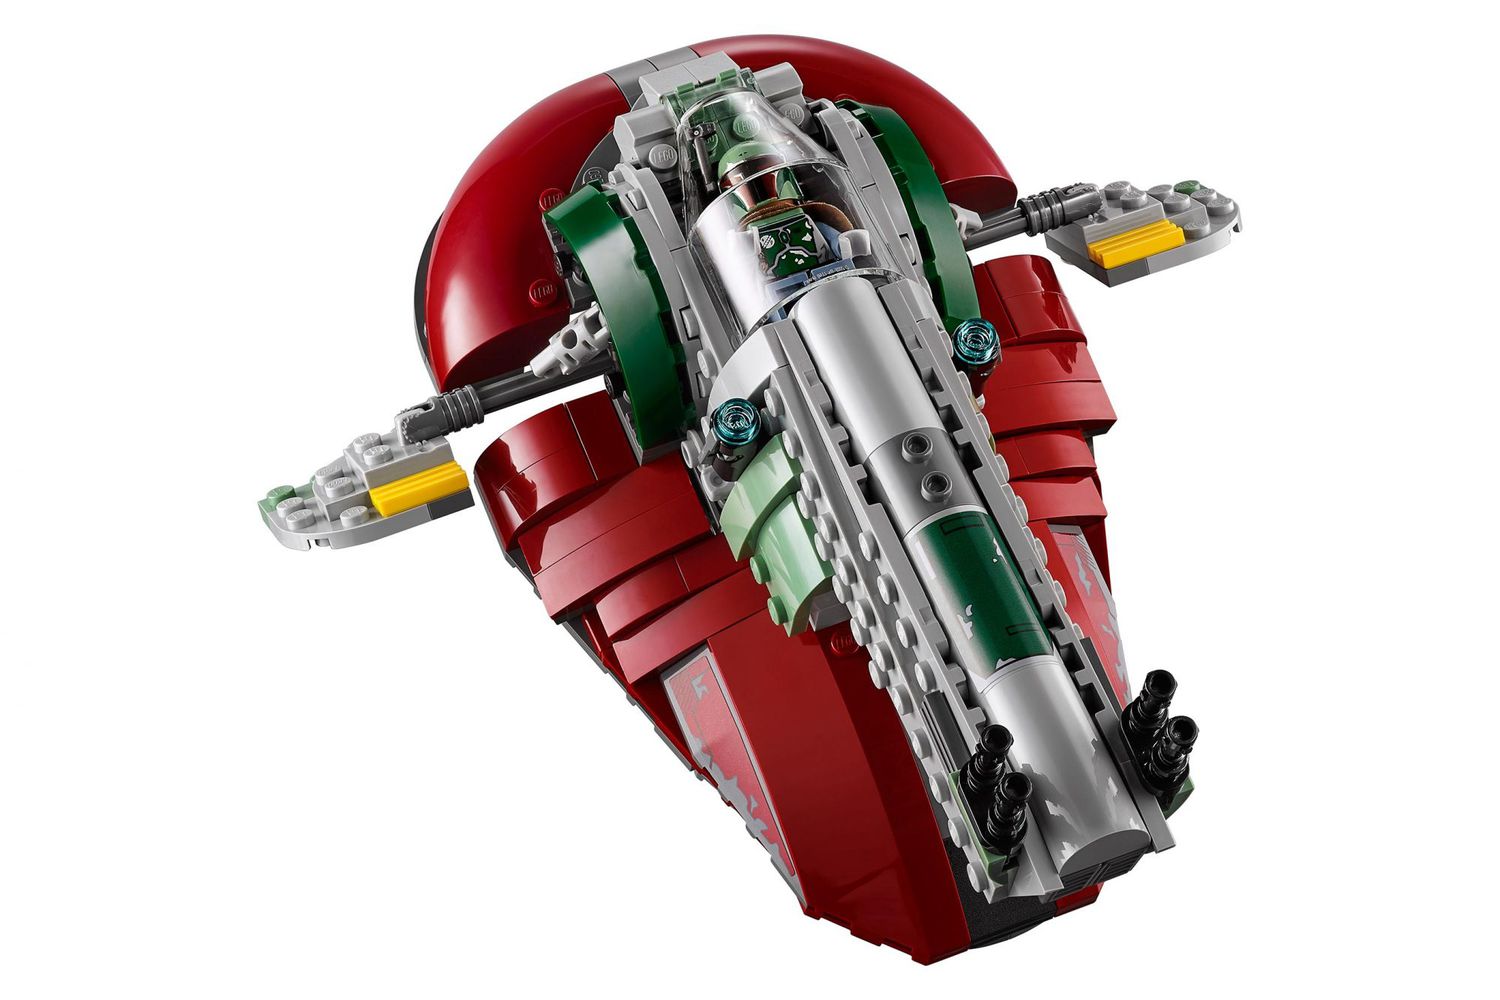 LEGO Star Wars' Betrayal at Cloud City